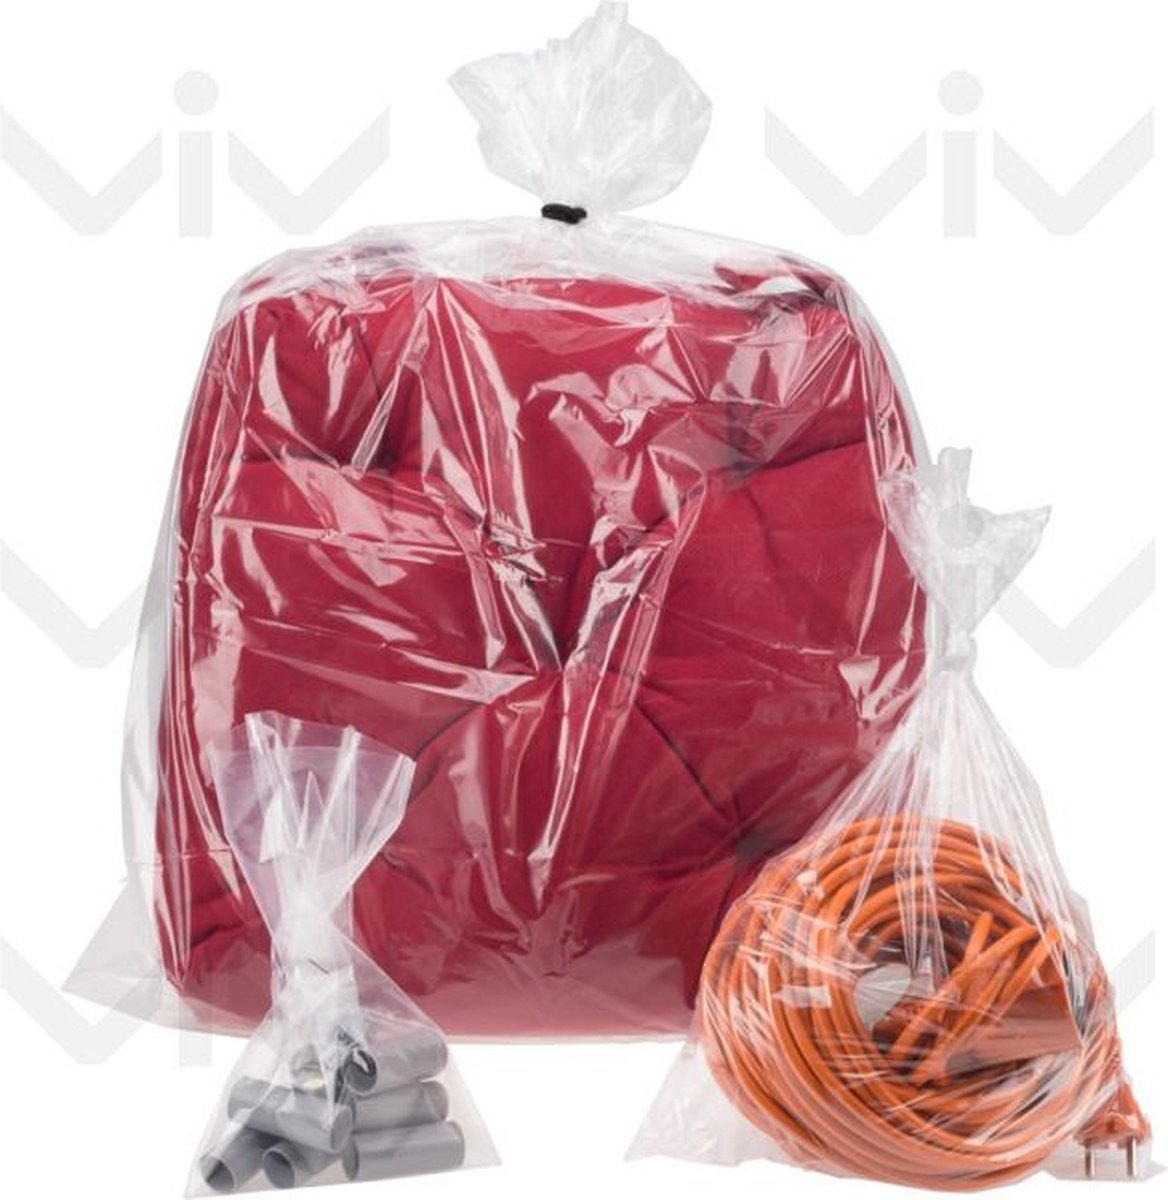 Plastic zakken groot 5 stuks 60cm x 80cm LDPE zakken polyzakken vlak transparant 60x80 - 600x800mm - Vlakke zakken - Bomba